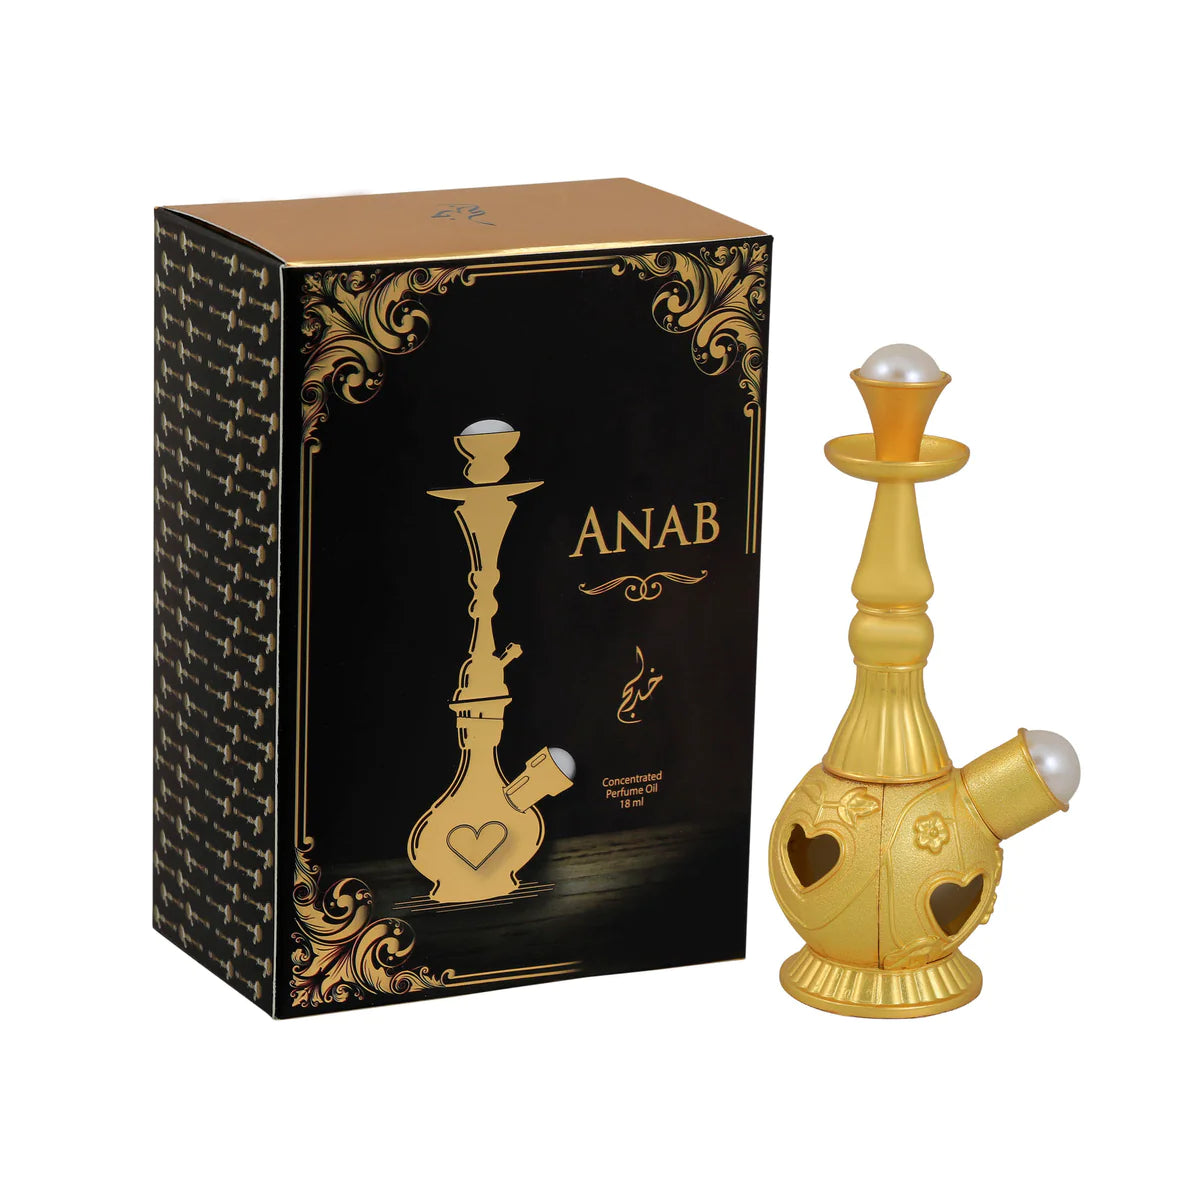 Anab CPO (18ml) Fragrance Oil by Khadlaj | Khan El Khalili